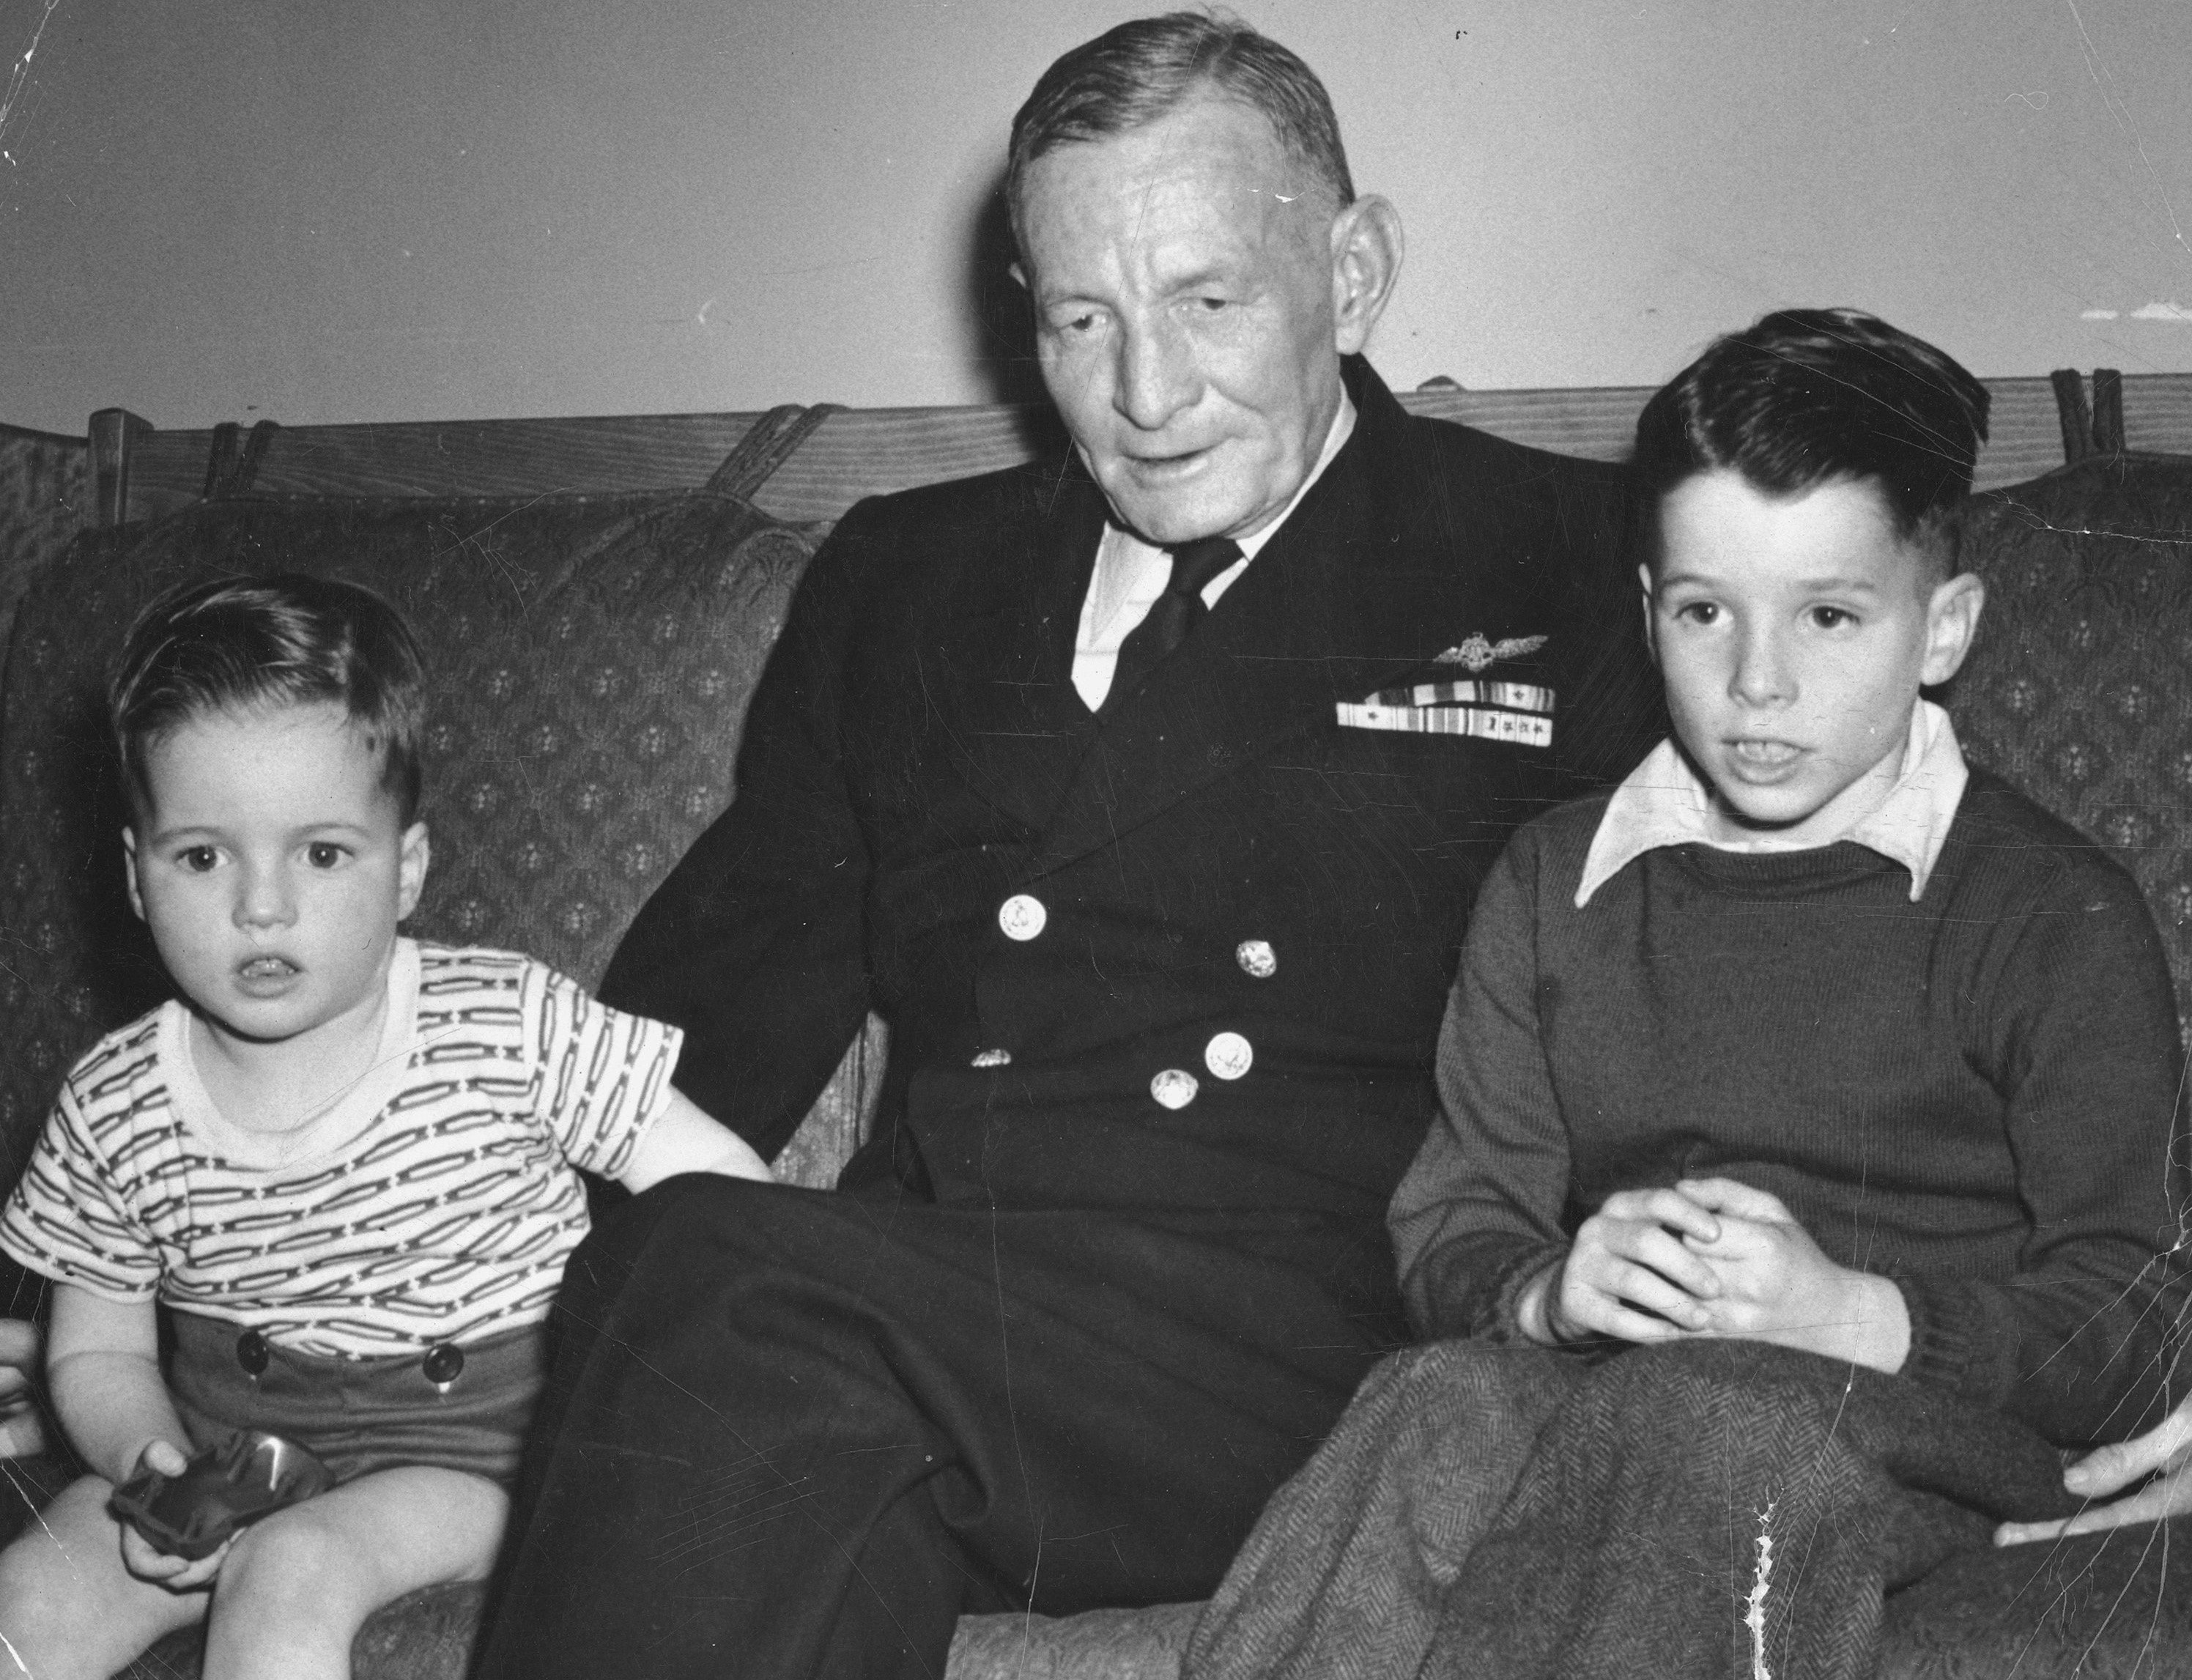 Джон Маккейн третий (справа) с дедом адмиралом Джоном Маккейном и младшим братом. Место съемки неизвестно.